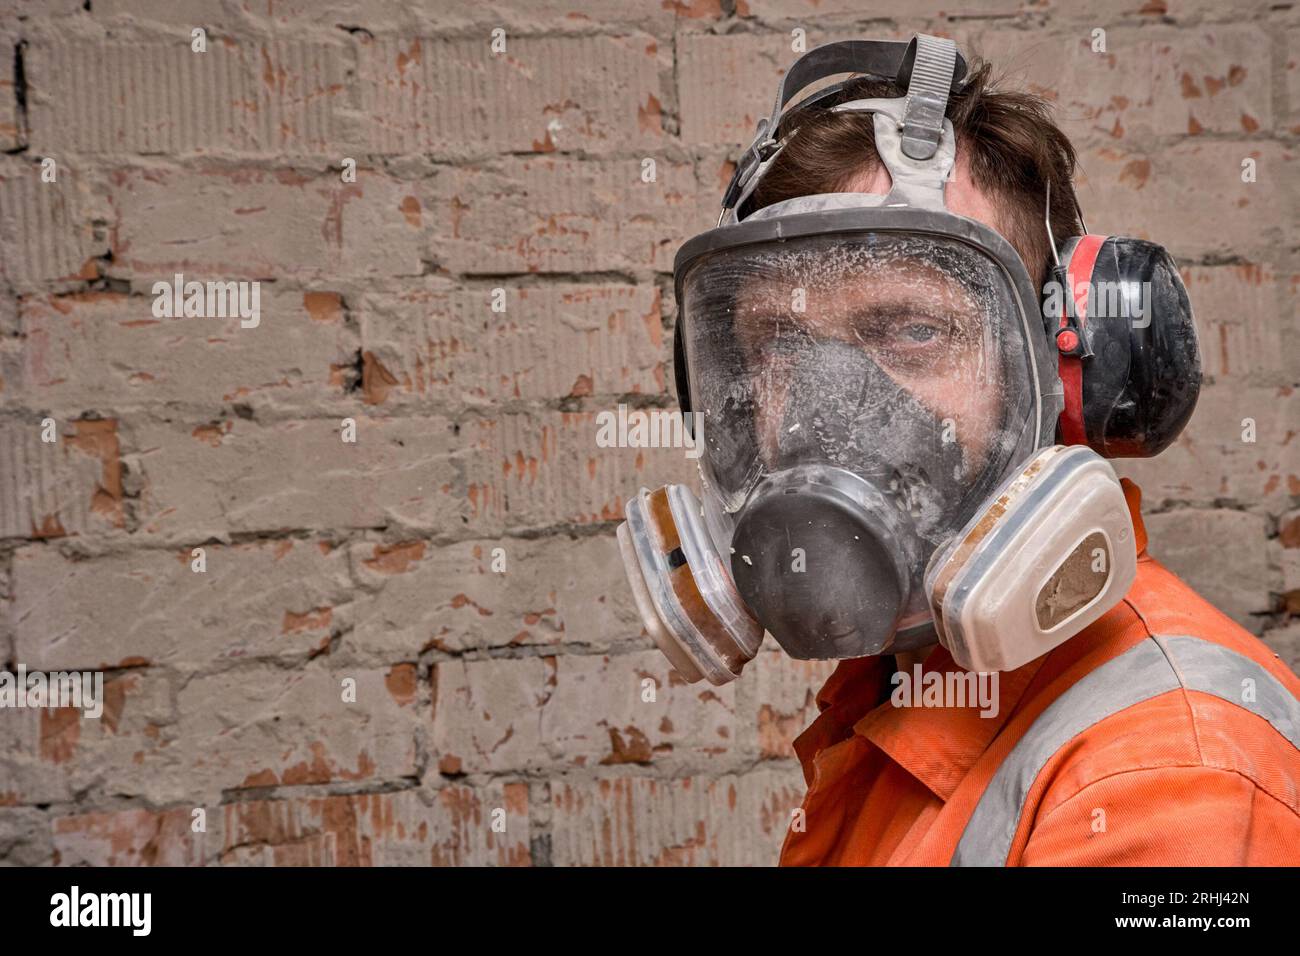 Bauarbeiter, der Vollmaske und Gehörschutz für Arbeiten in Gefahrenumgebungen trägt. Stockfoto